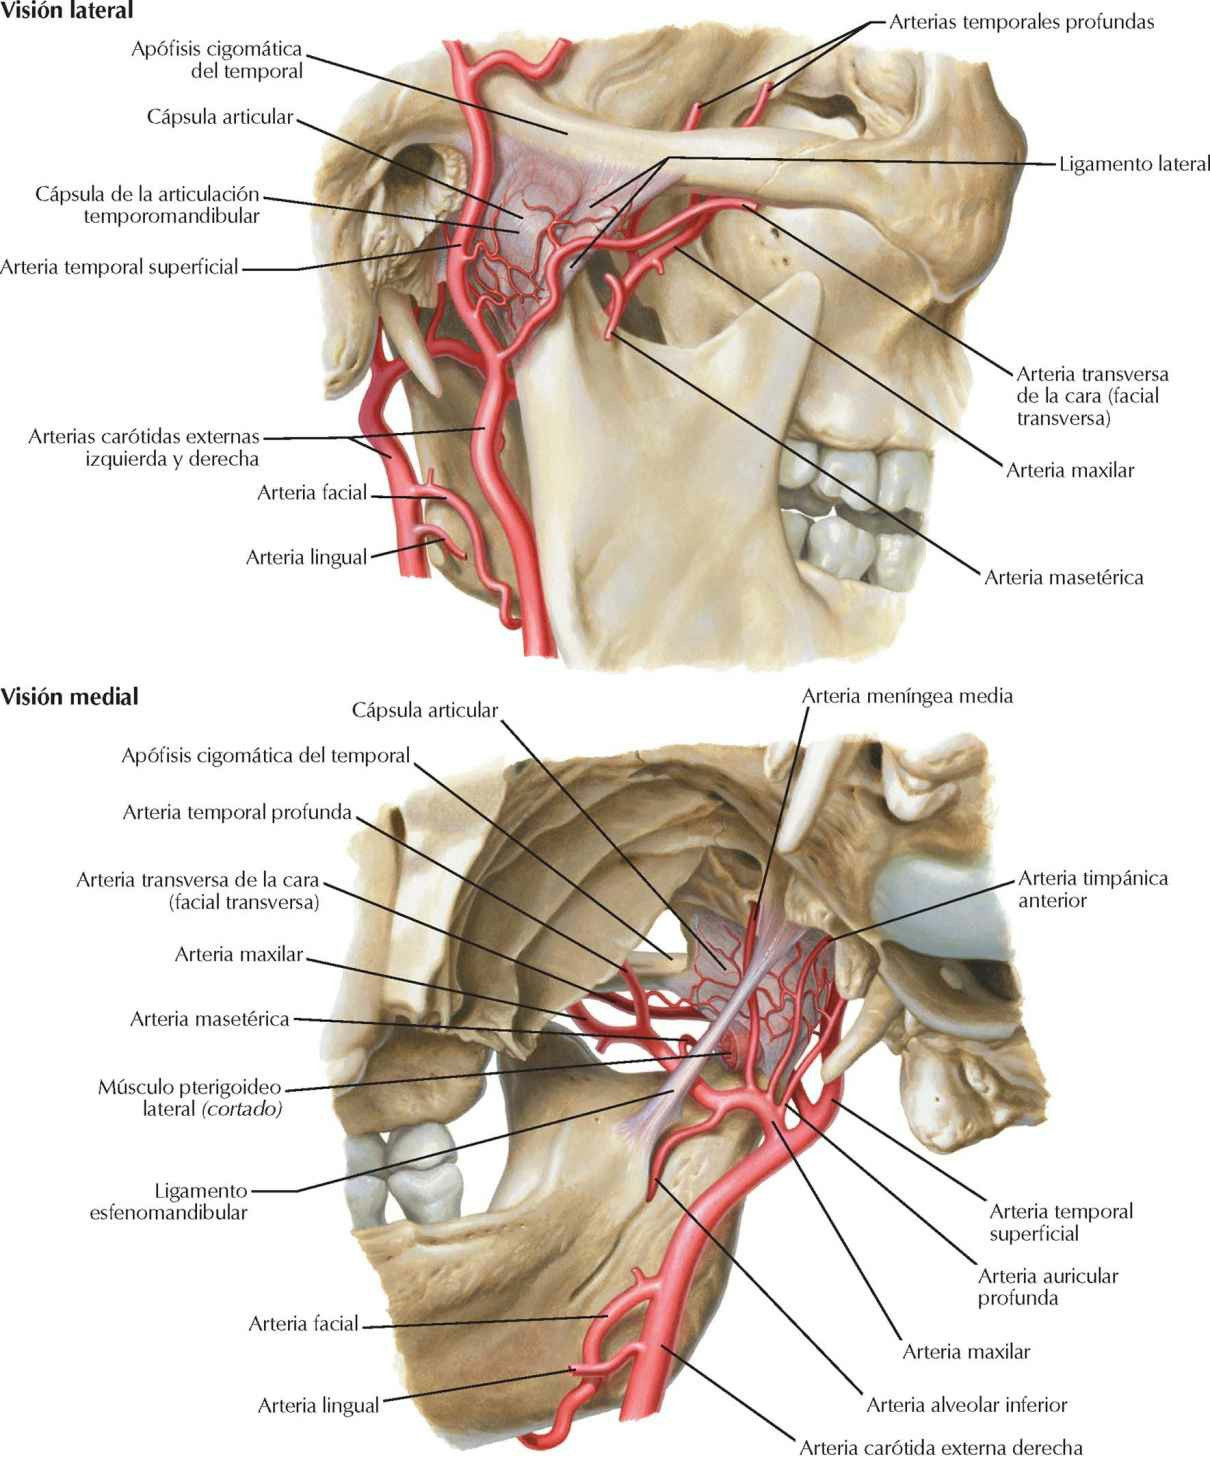 Arterias maxilar (porción proximal) y
temporal superficial.